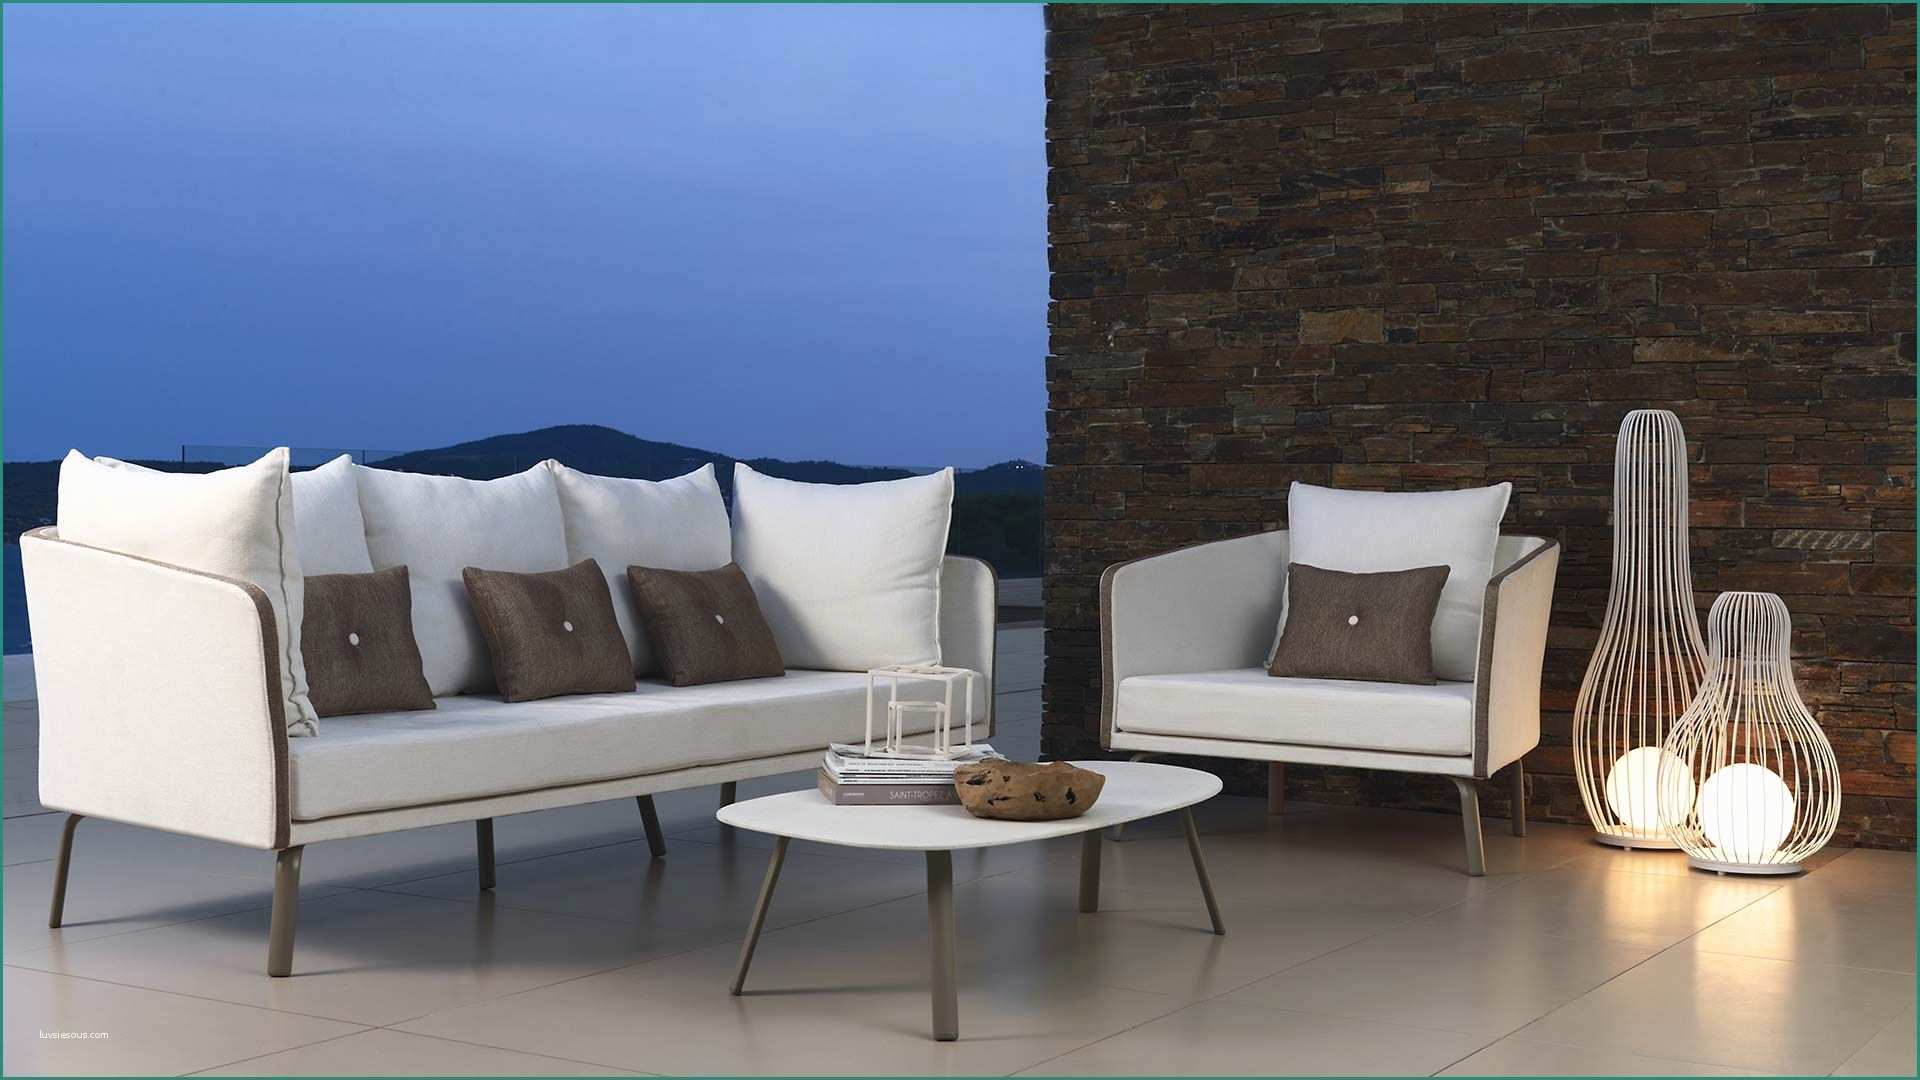 Divani Da Esterno E Talenti Outdoor Furniture From Italy sofa Armchairs Chairs